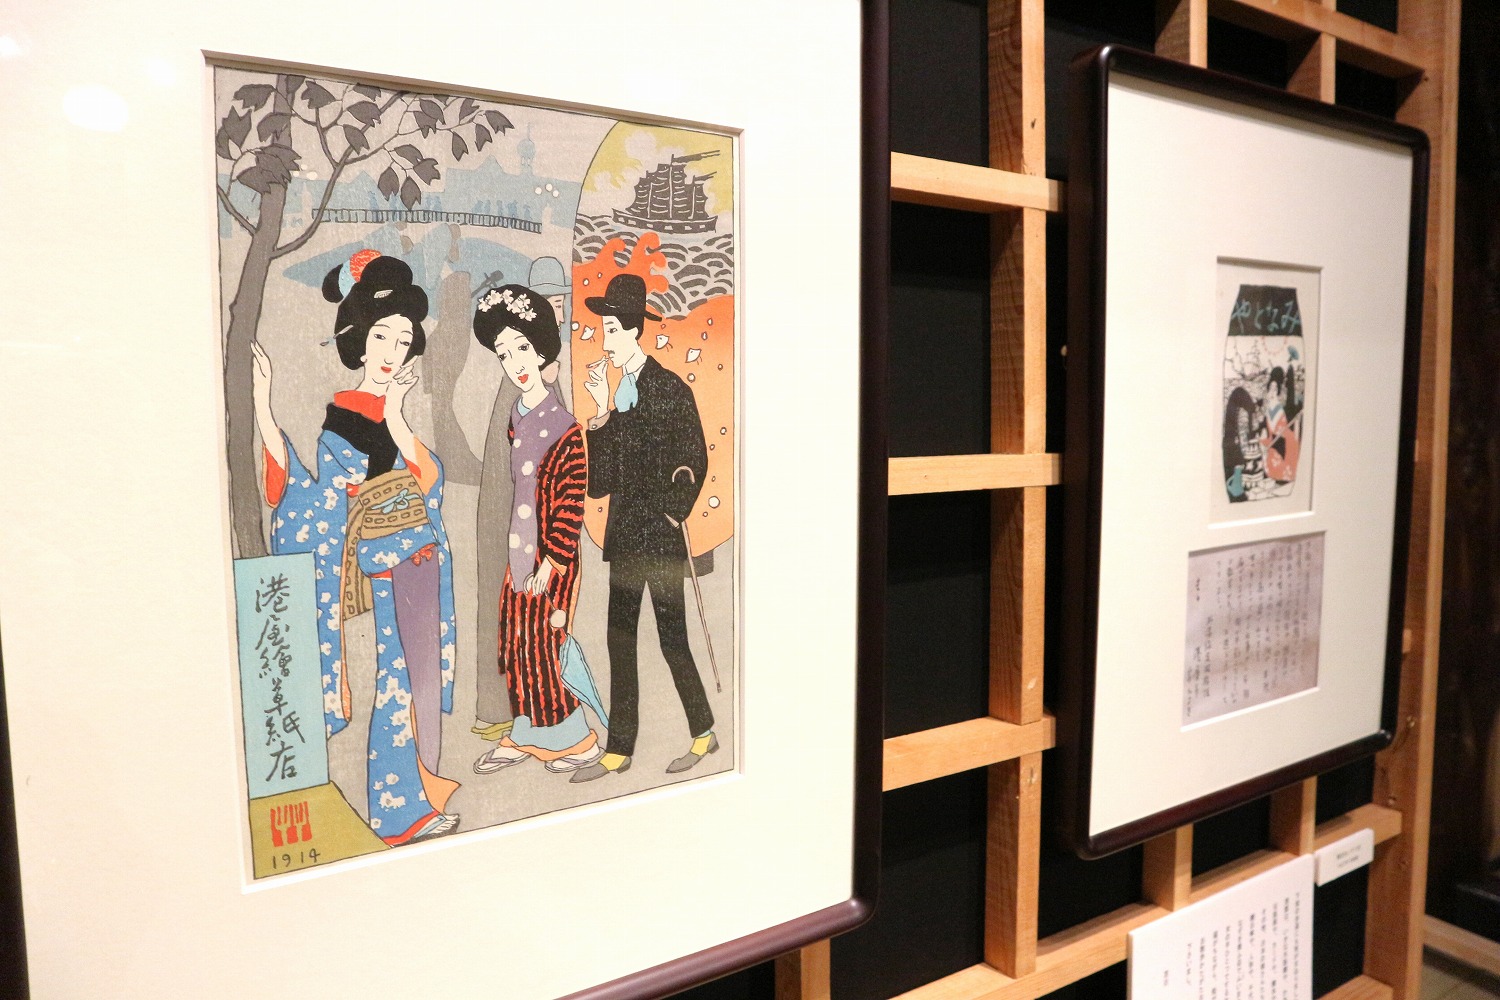 夢二が自らデザインした生活雑貨を販売する〈港屋絵草子店〉の店頭風景を描いた『港屋絵草紙店』の復刻木版画。